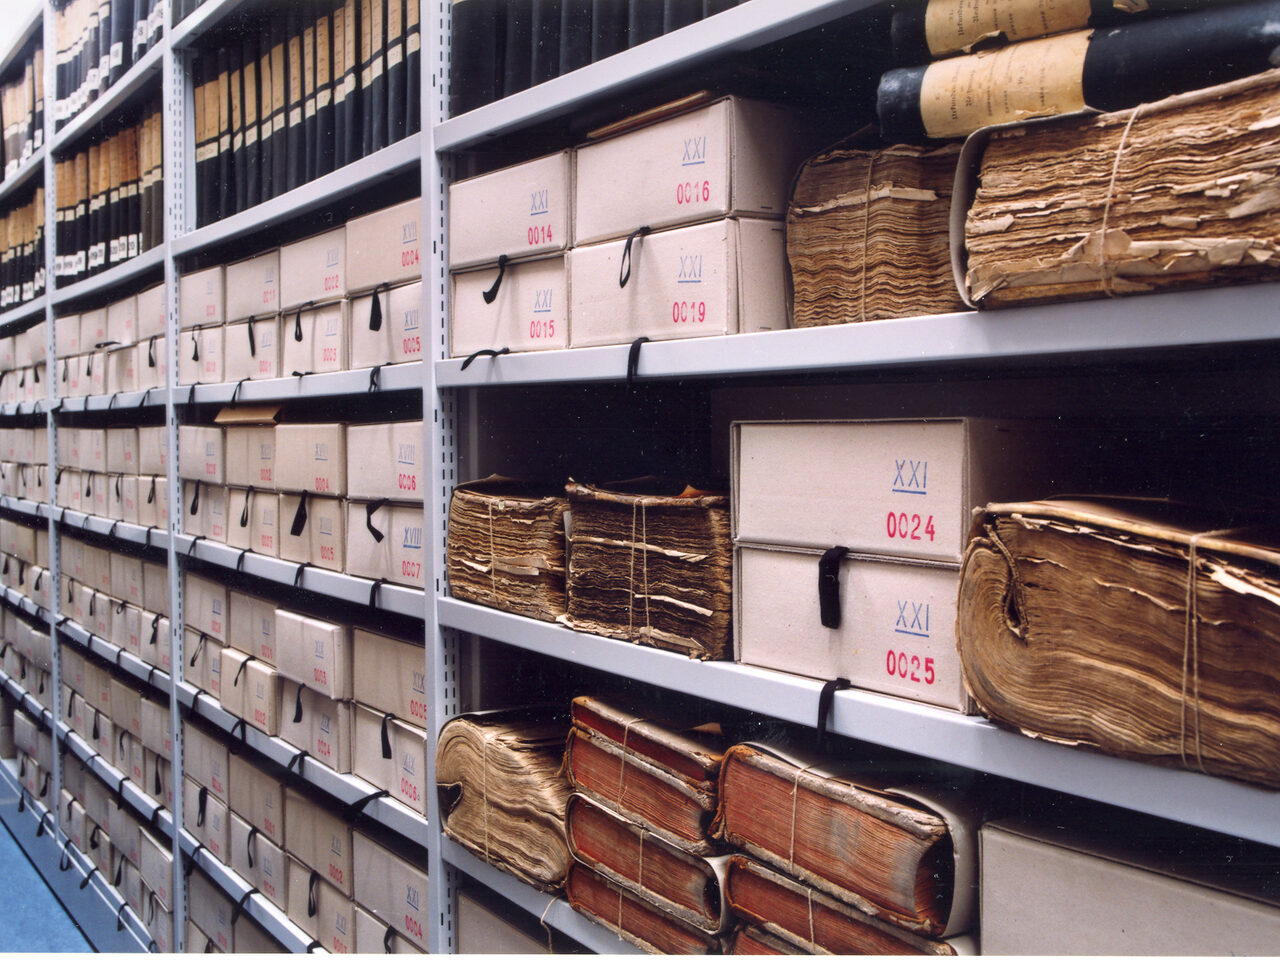 Archivierte Dokuemente in einem Regal im Stadtarchiv